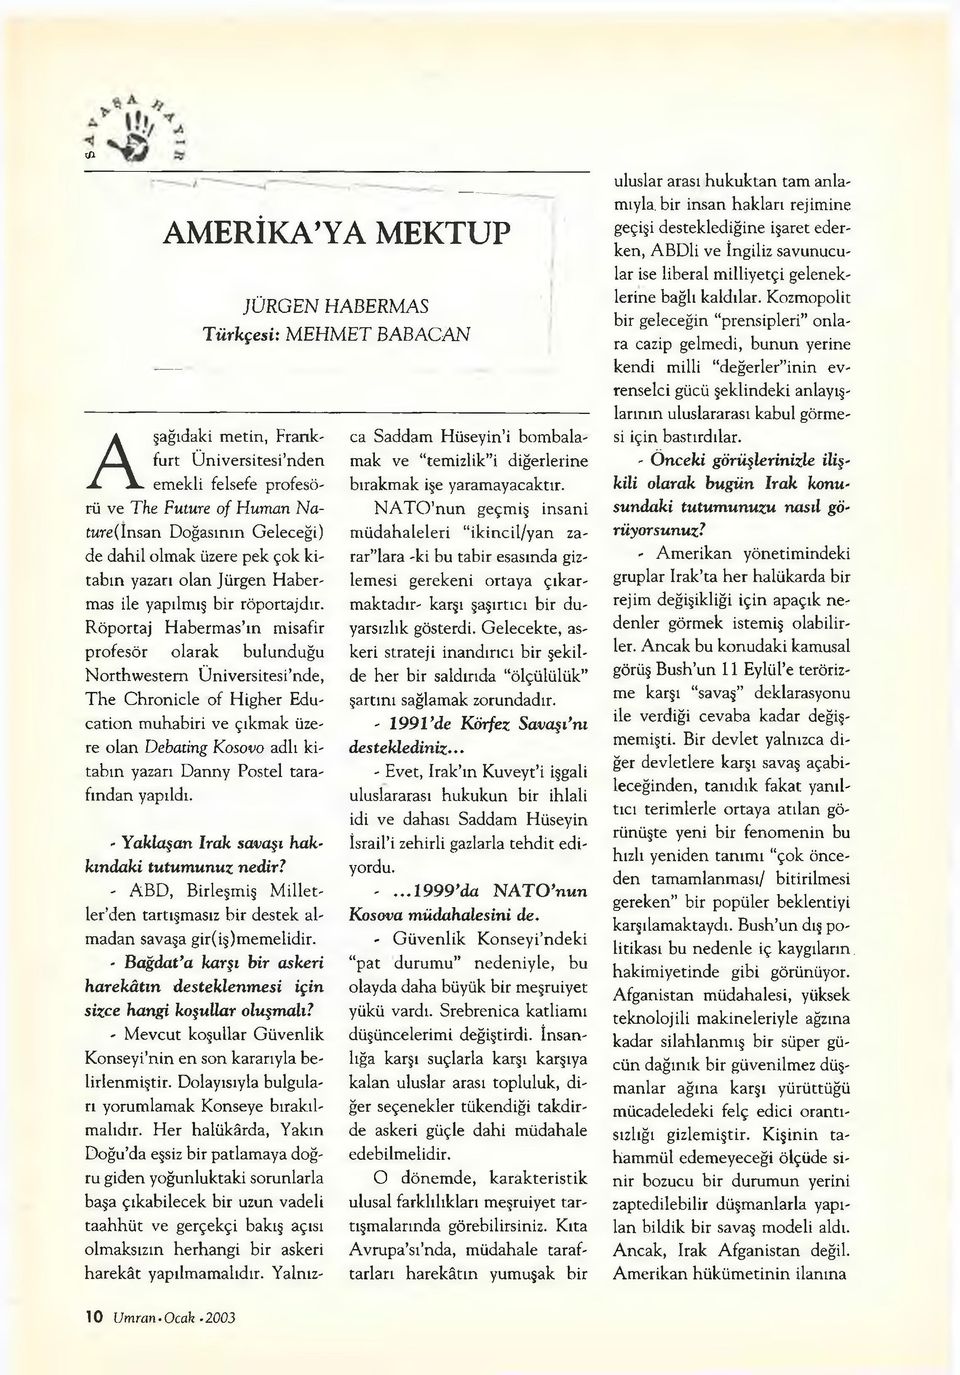 Röportaj Habermas ın misafir profesör olarak bulunduğu Northwestern Üniversitesi nde, The Chronicle of Higher Education muhabiri ve çıkmak üzere olan Debating Kosovo adlı kitabın yazarı Danny Postel